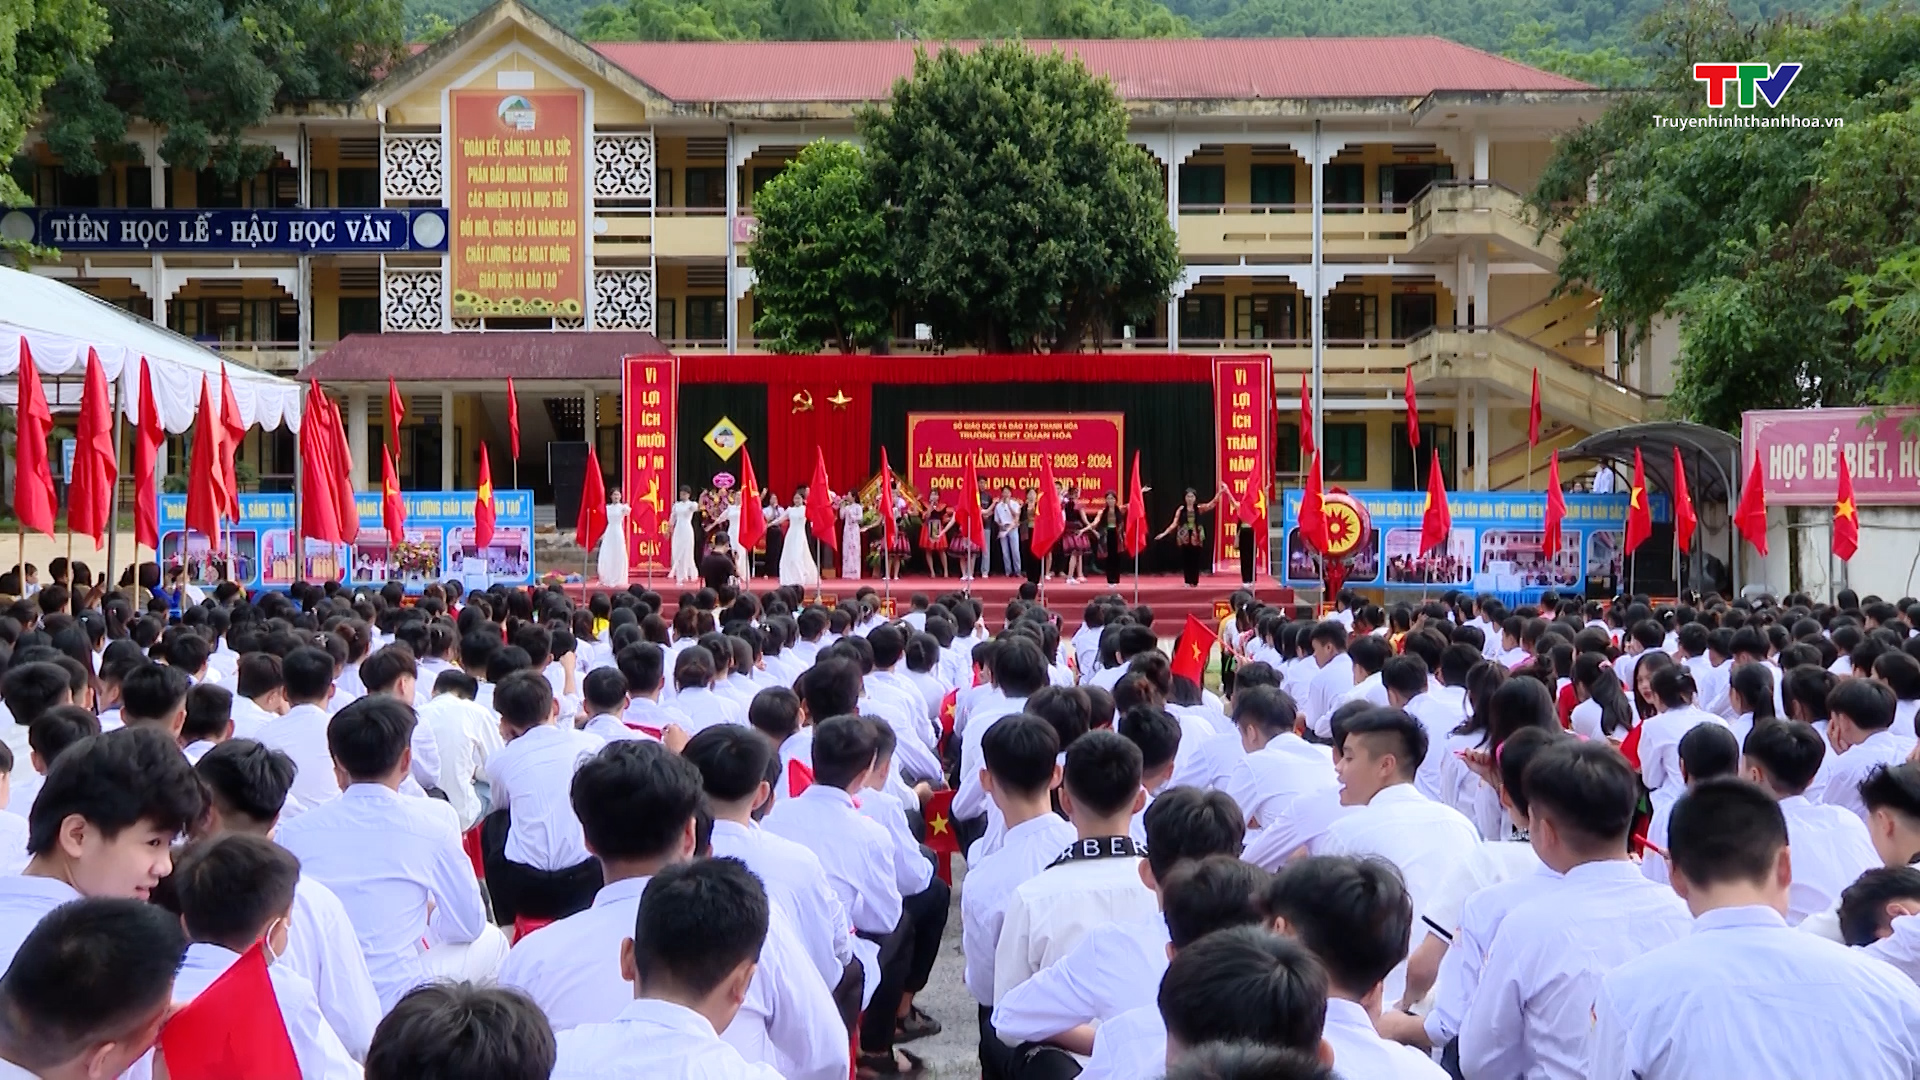 Trưởng ban Tuyên giáo Tỉnh ủy Đào Xuân Yên dự lễ khai giảng năm học mới tại Trường THPT Quan Hóa - Ảnh 2.